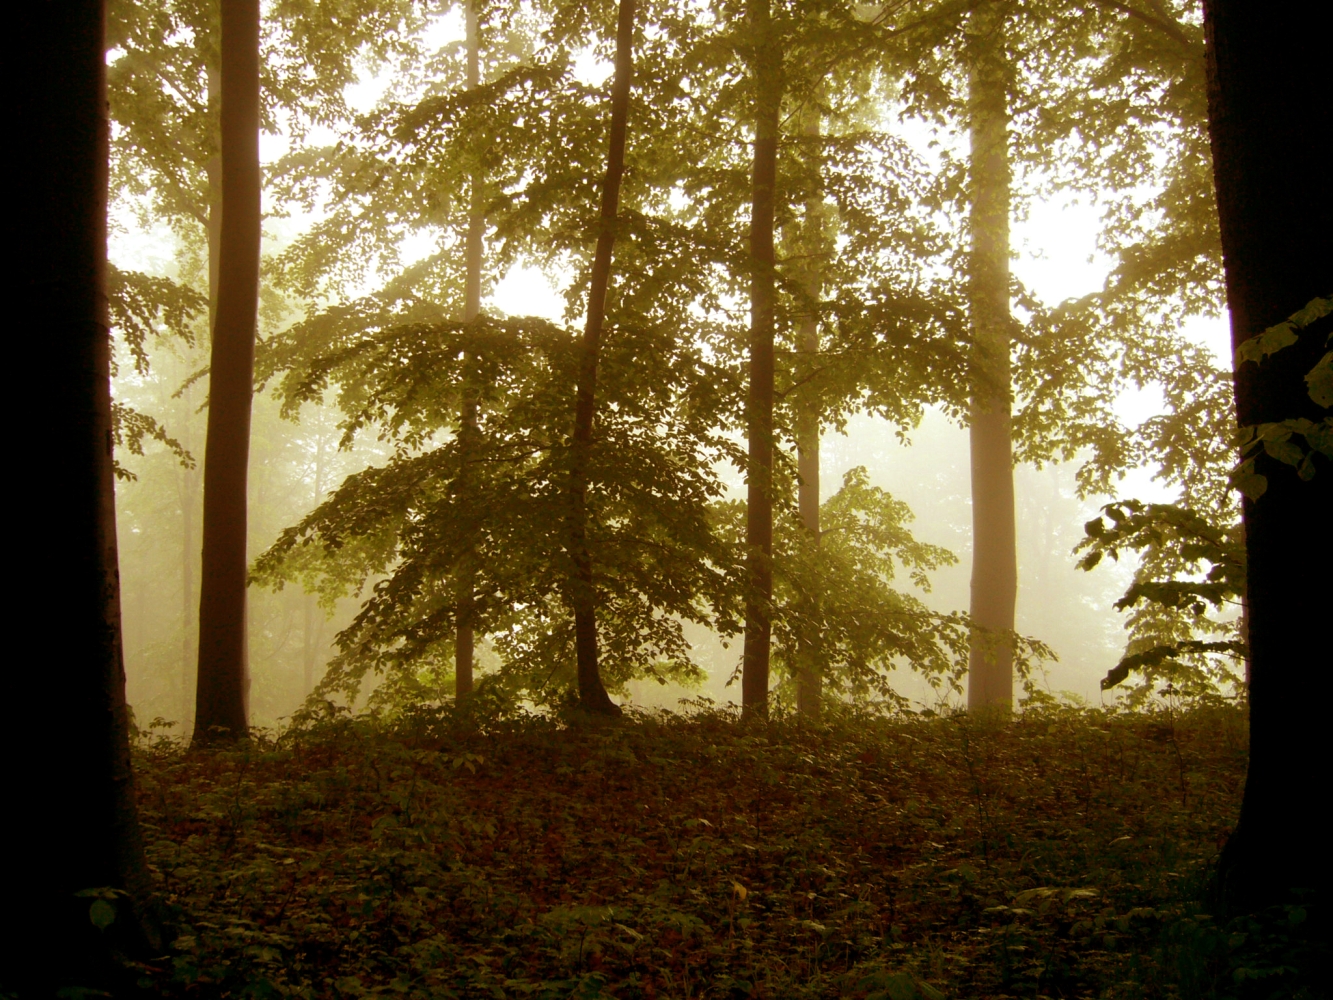 les v mlze